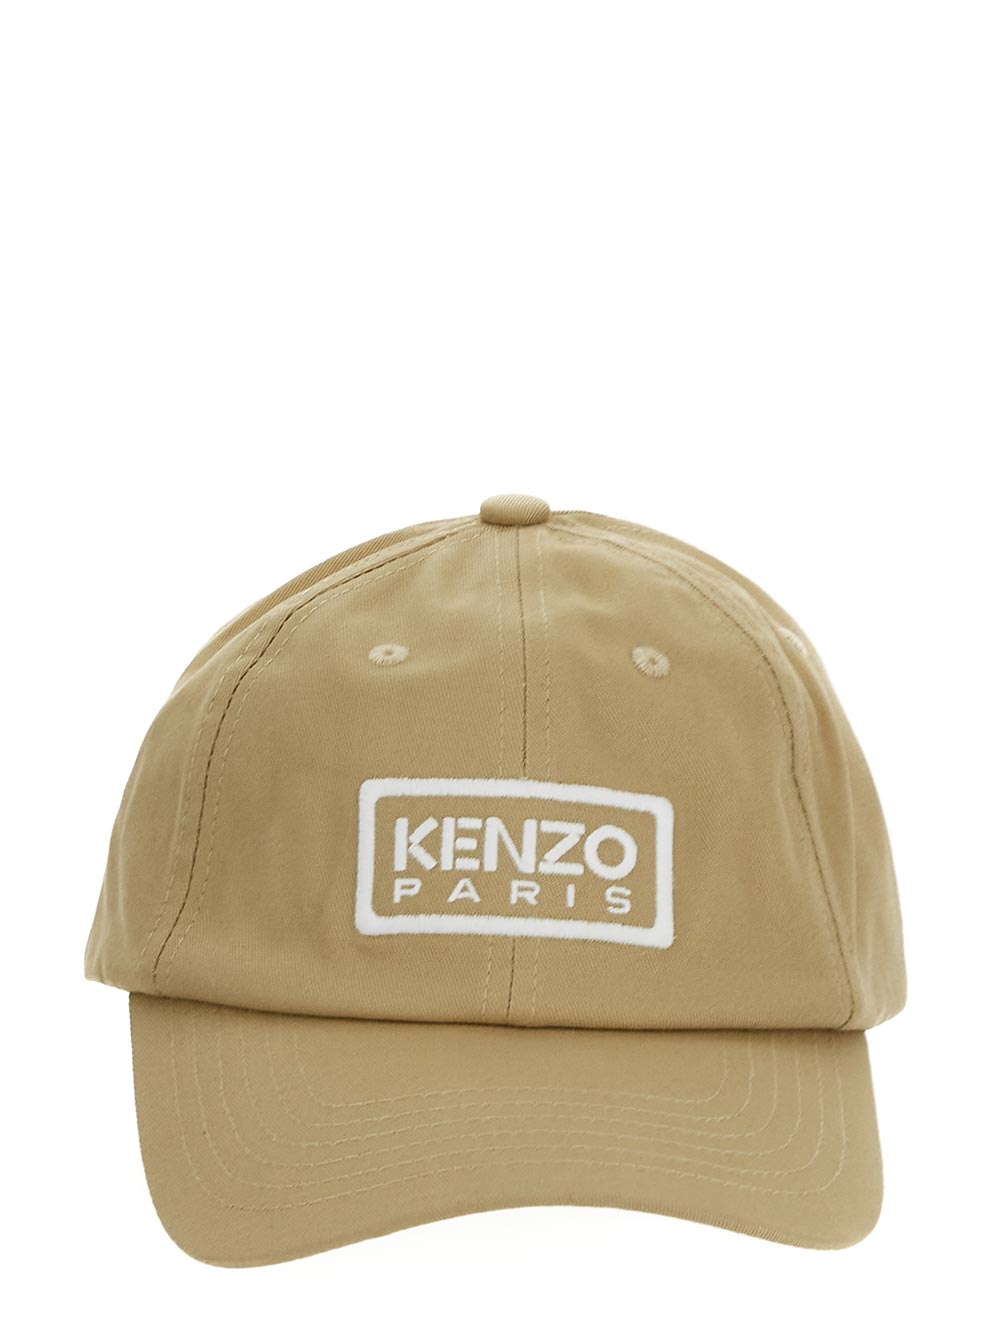 Kenzo Tag Cotton Cap